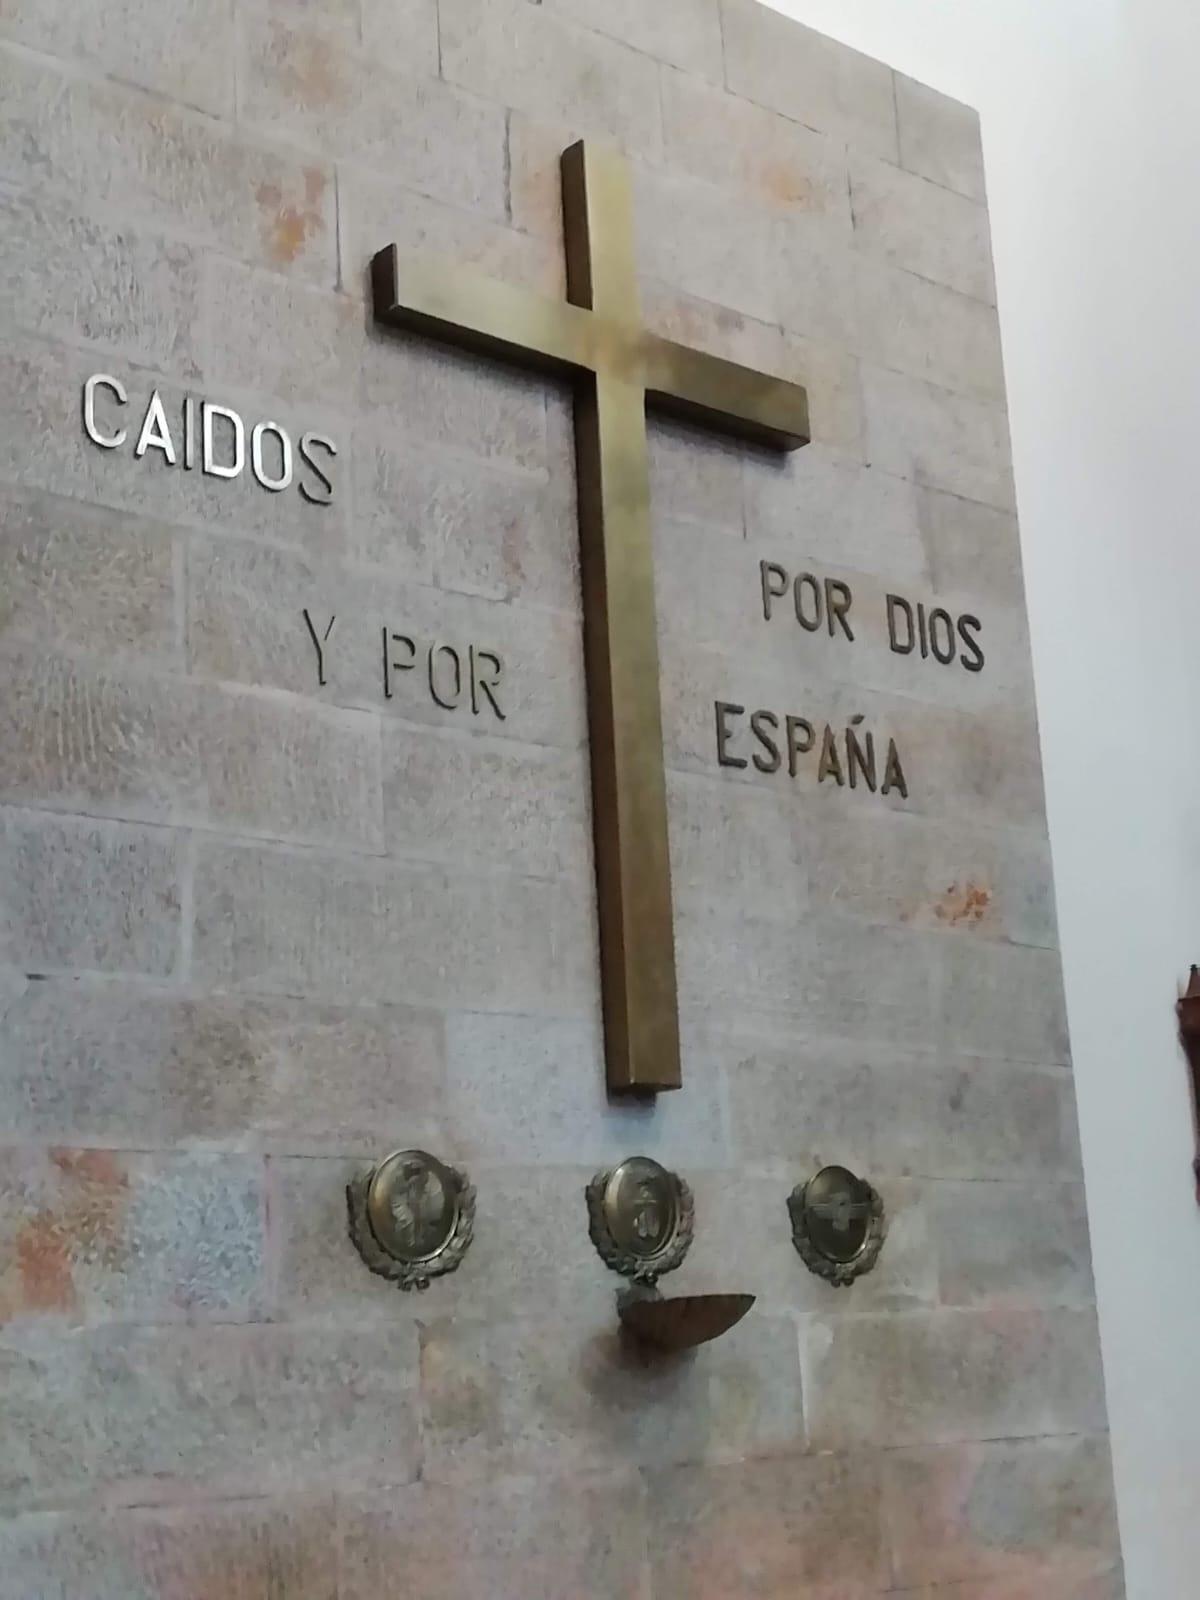 Referencias a la guerra civil y al dictador Francisco Franco en la iglesia de San Francisco. Imágenes cedidas